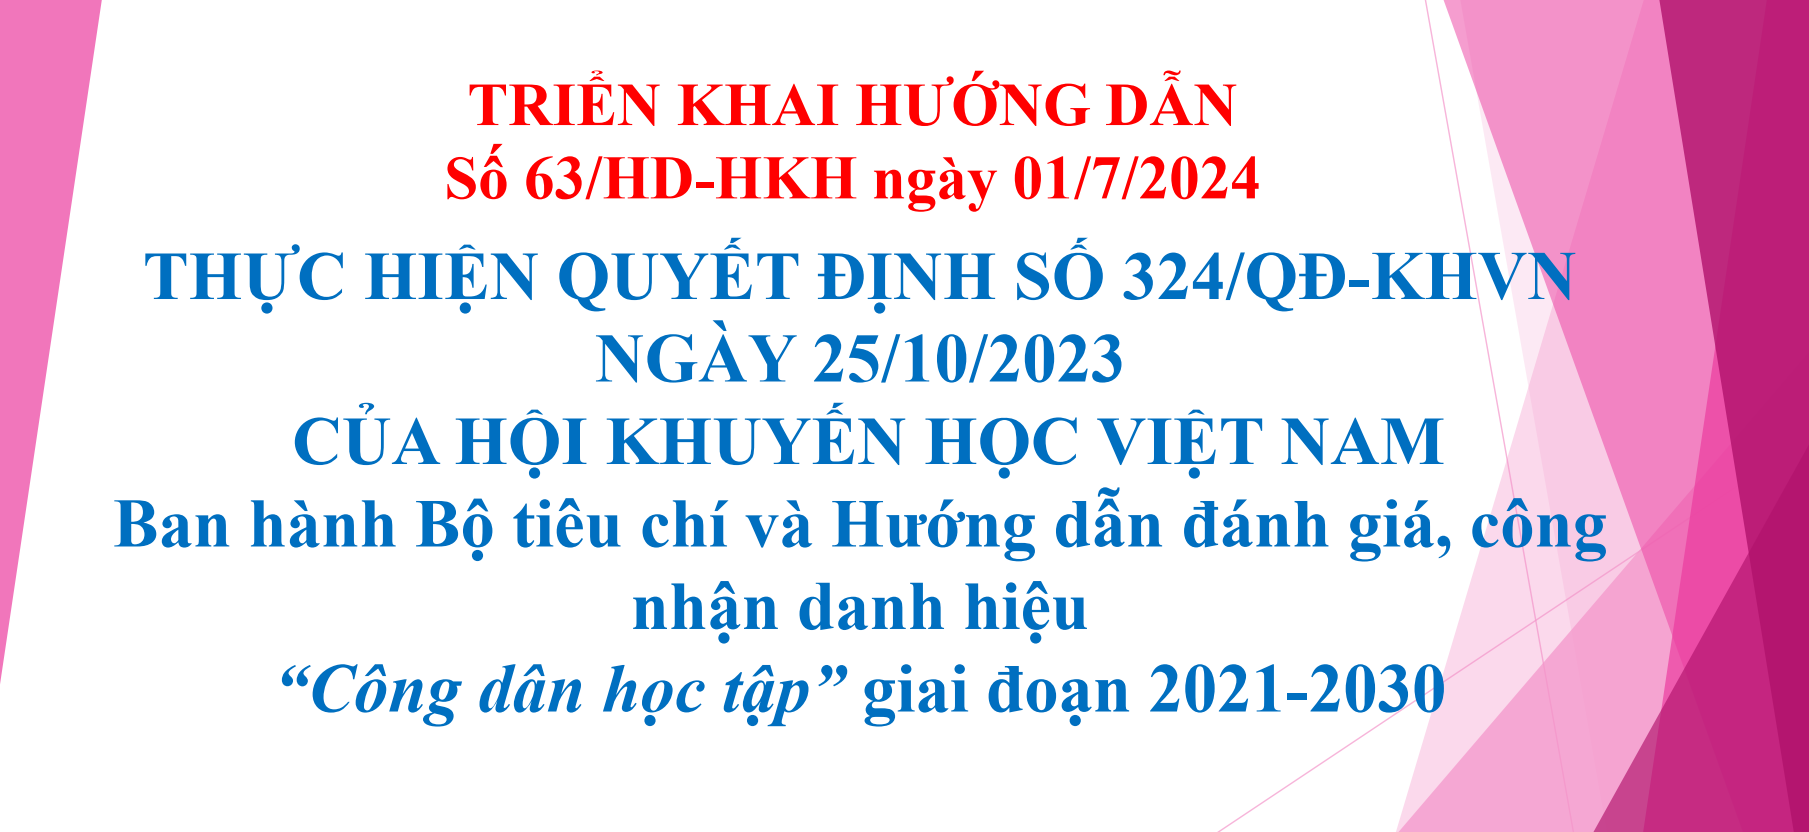 Hướng dẫn triển khai thực hiện Quyết định số 324/QĐ-KHVN ngày 25/10/2023 của Hội Khuyến học Việt Nam ban hành Bộ tiêu chí và Hướng dẫn đánh giá, công nhận danh hiệu 